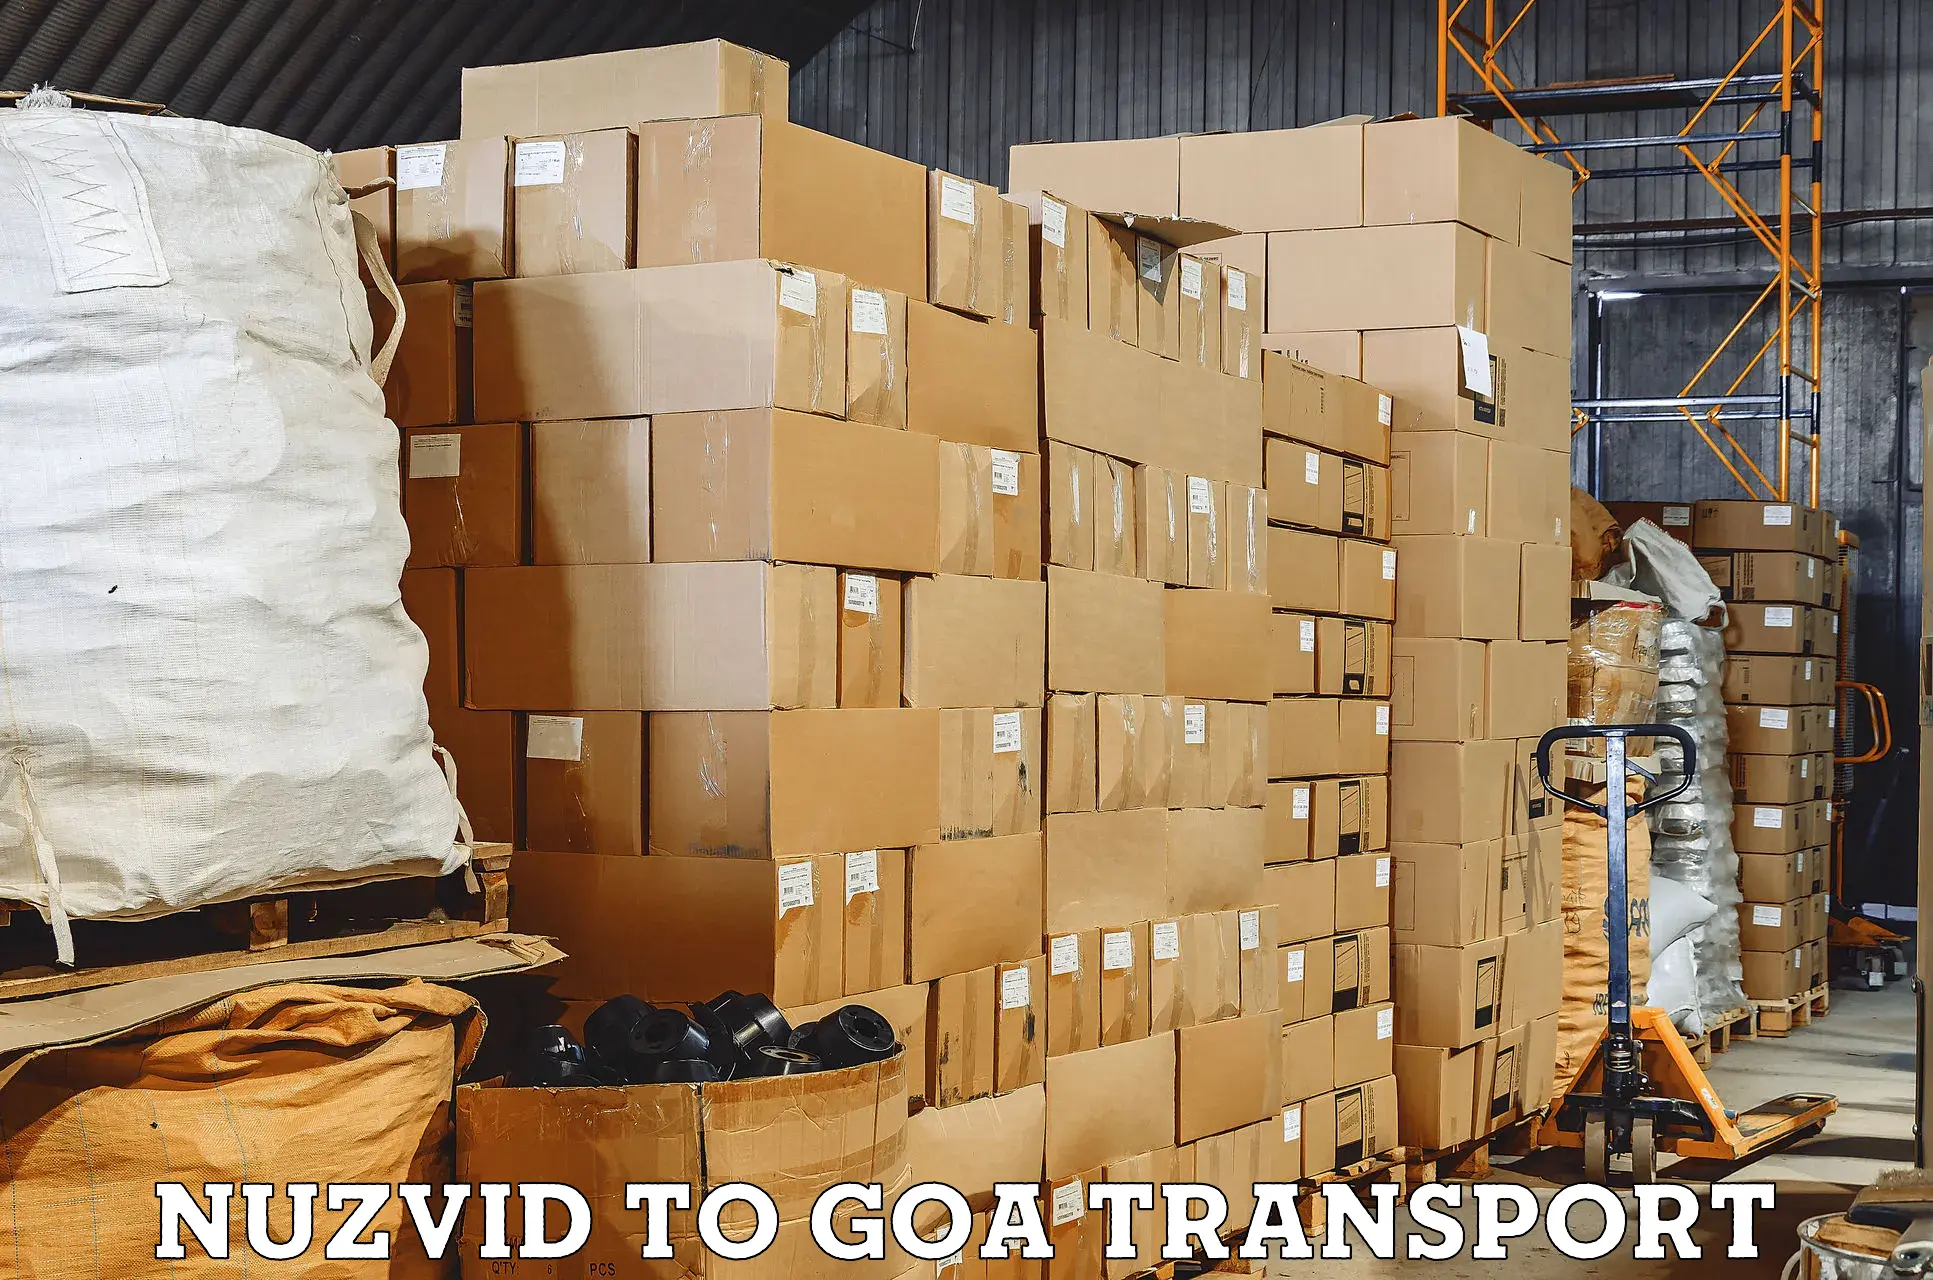 Nearest transport service Nuzvid to IIT Goa